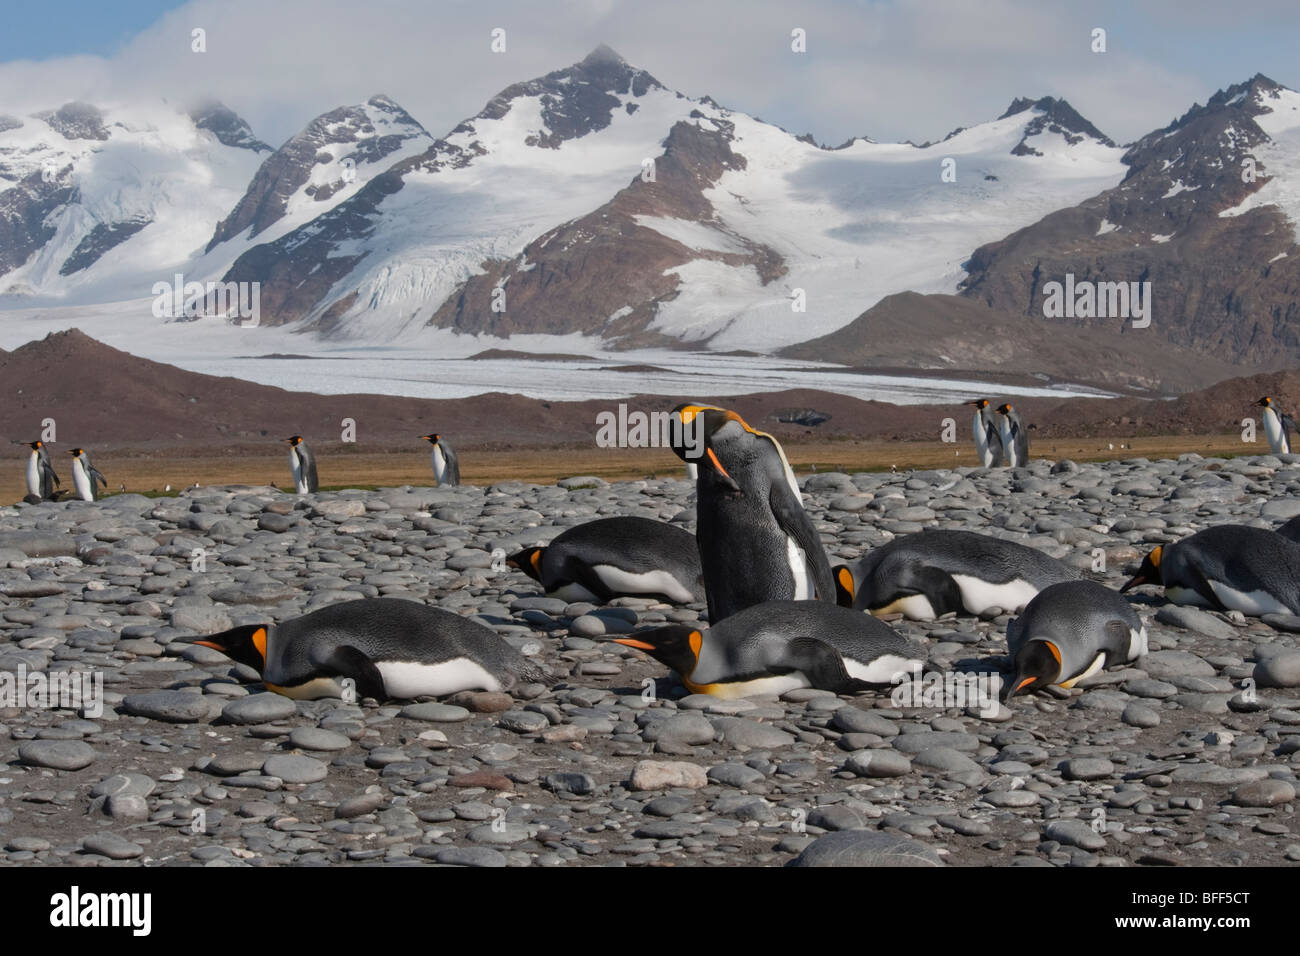 Il re dei pinguini, Aptenodytes patagonicus, crogiolandosi al sole con le montagne della Georgia del Sud in background. Foto Stock